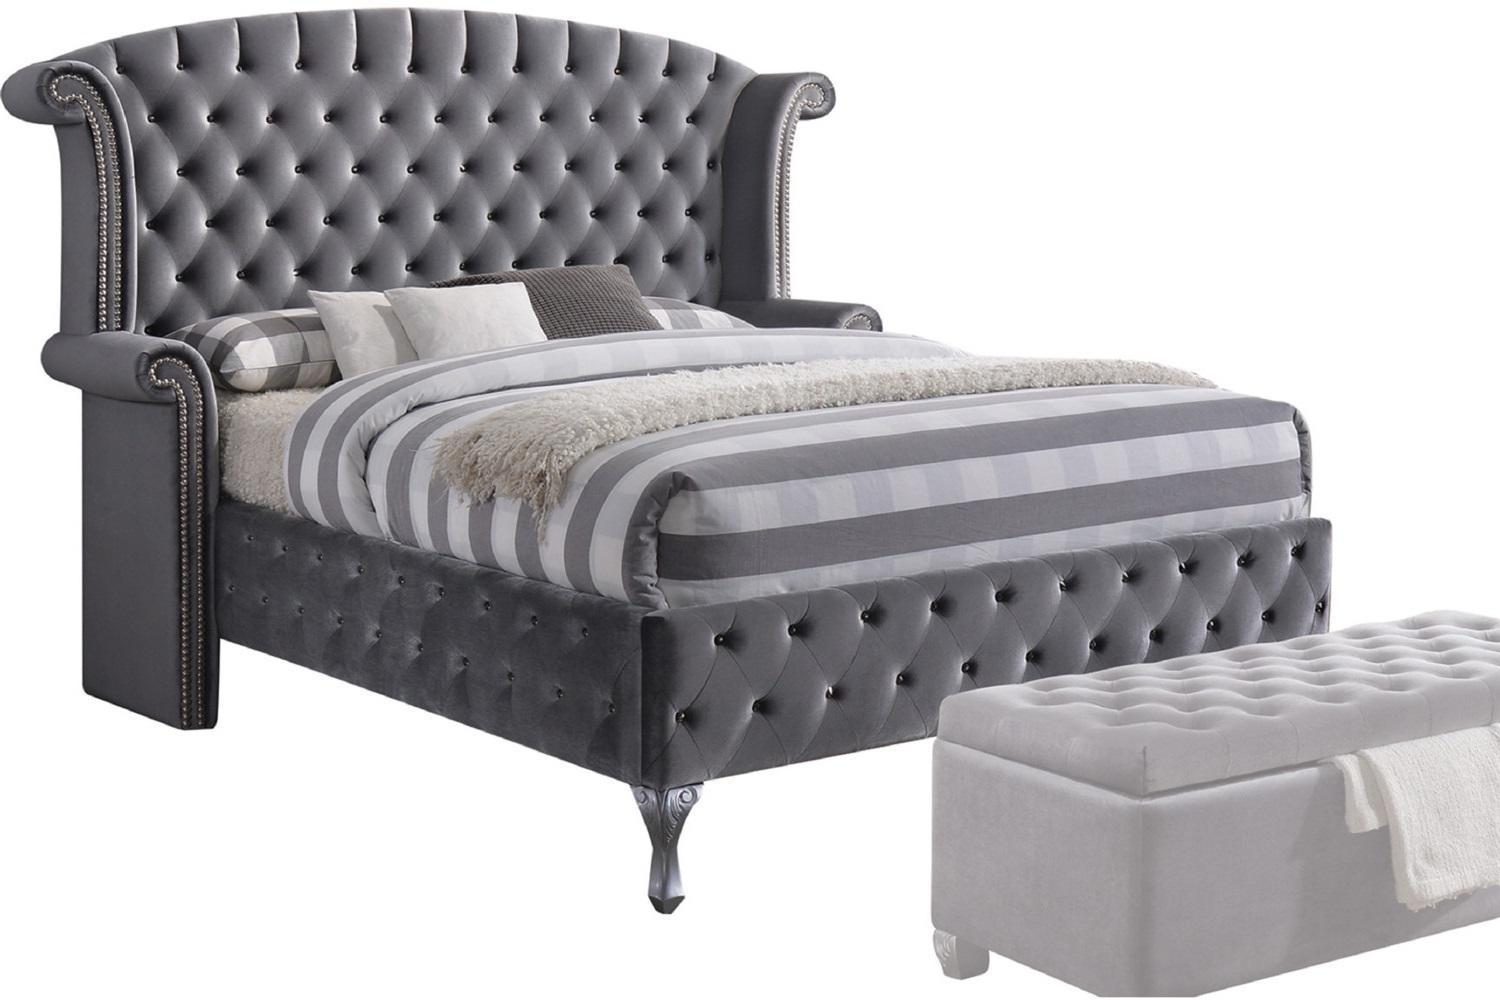 Traditional, Casual Platform Bed Rebekah-25816EK 25816EK in Gray Fabric